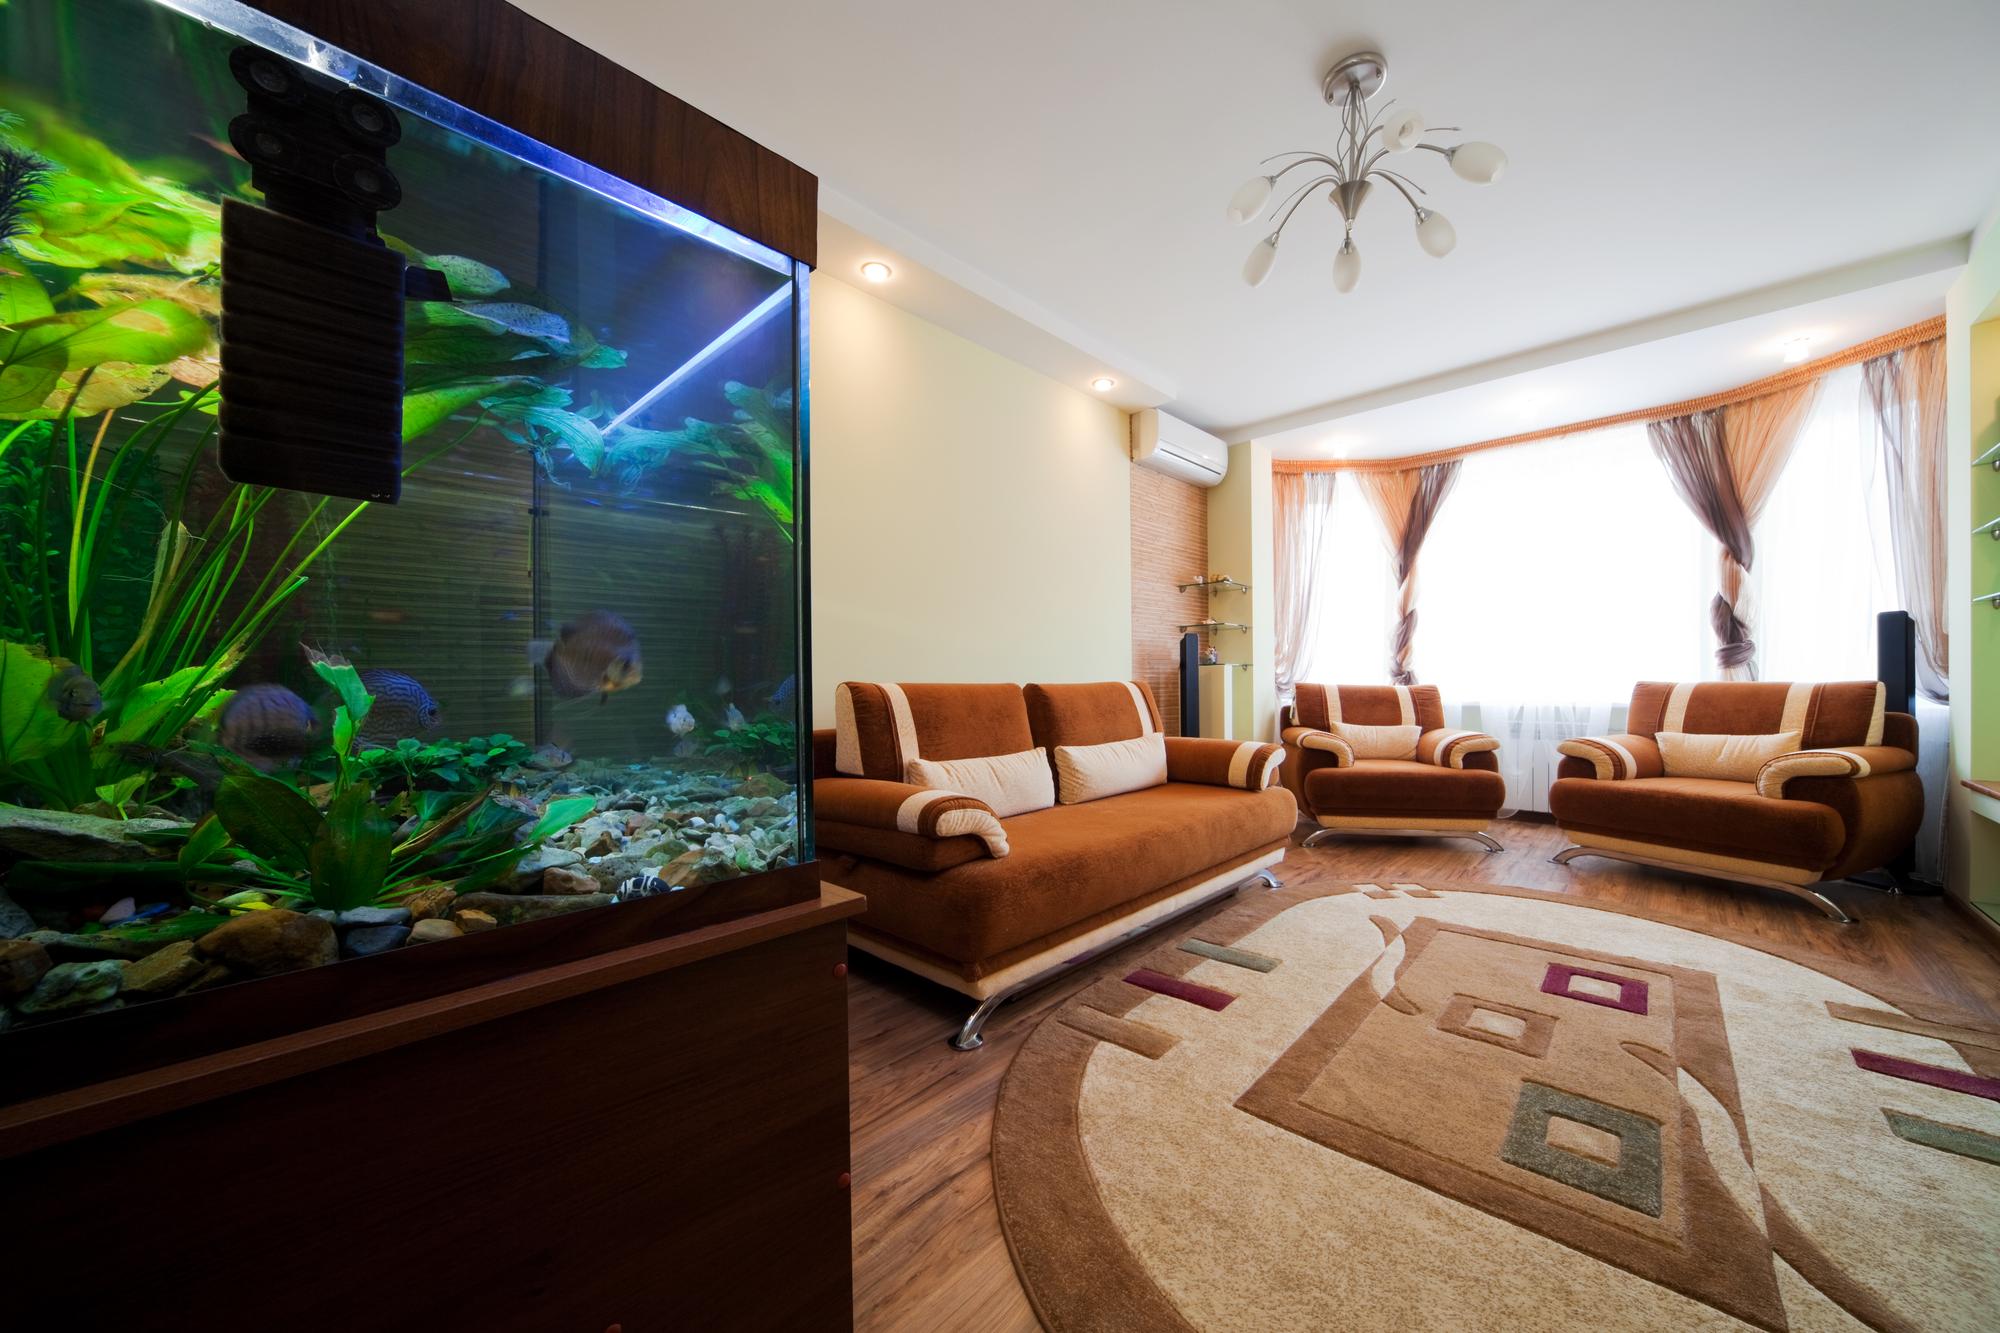 2. Duże akwarium w mieszkaniu - jakie gatunki?